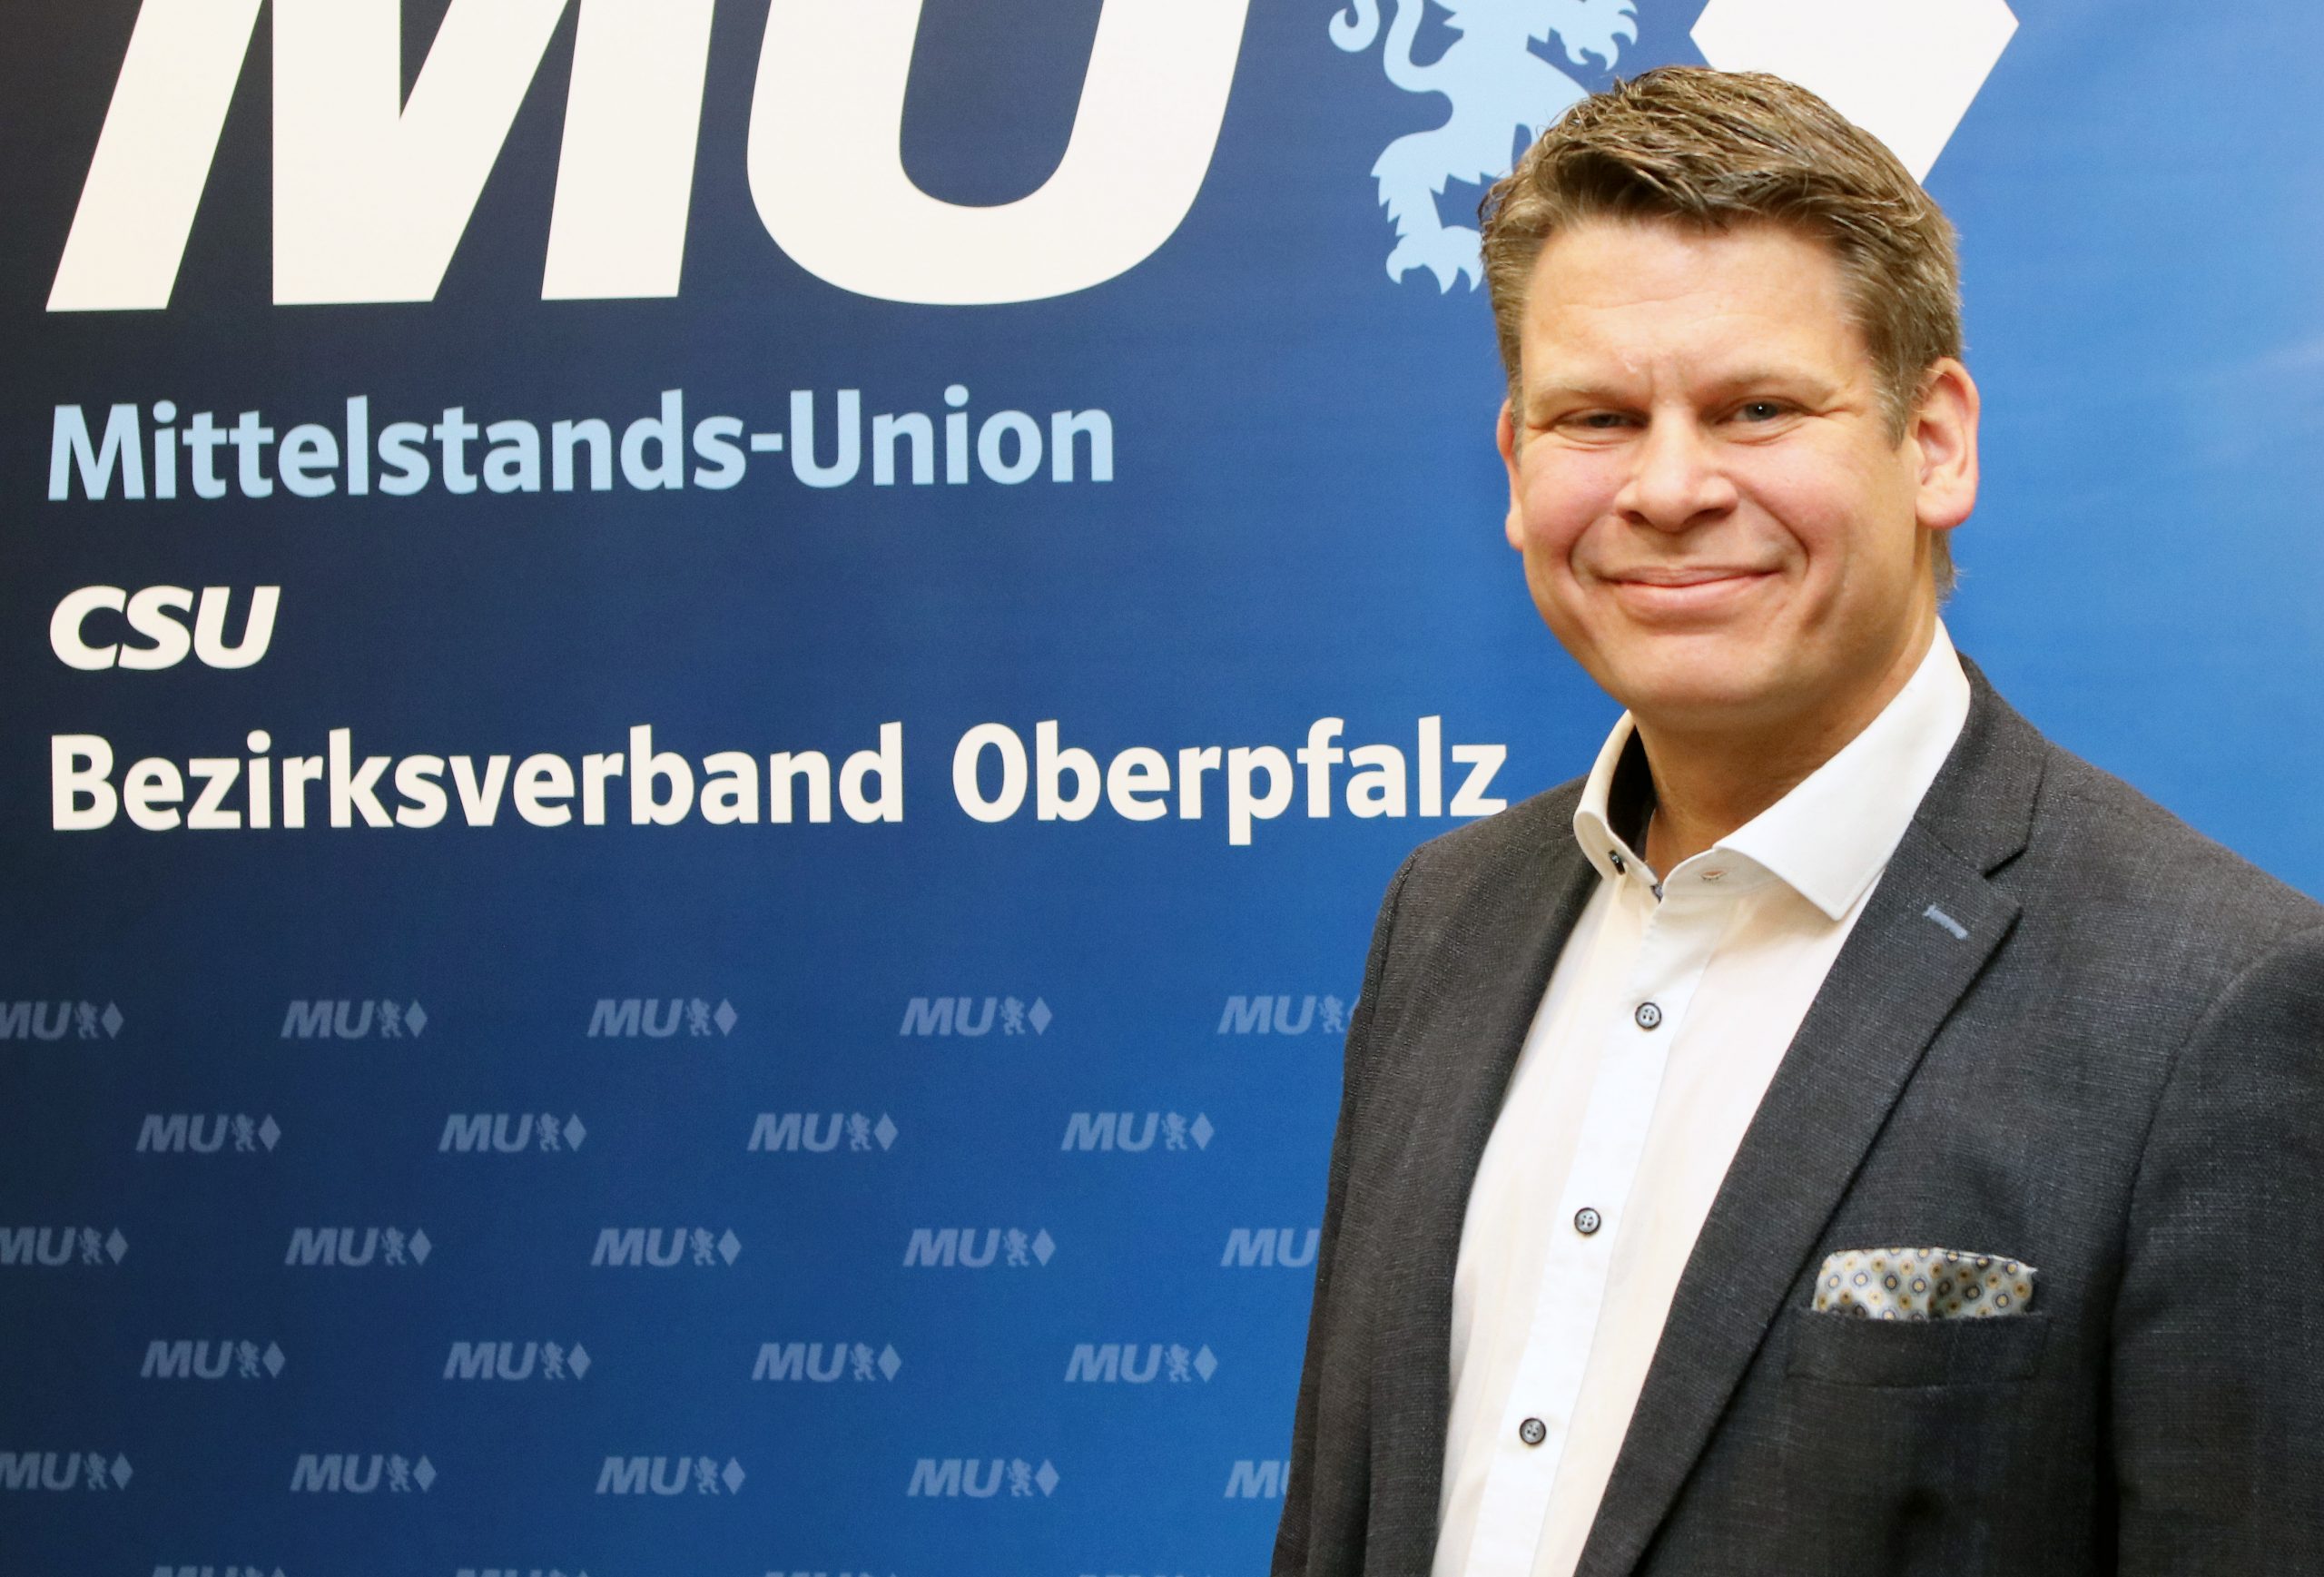 MU-Bezirksvorsitzender Benjamin Zeitler begrüßt die kostenfreie Meisterausbildung in Bayern.